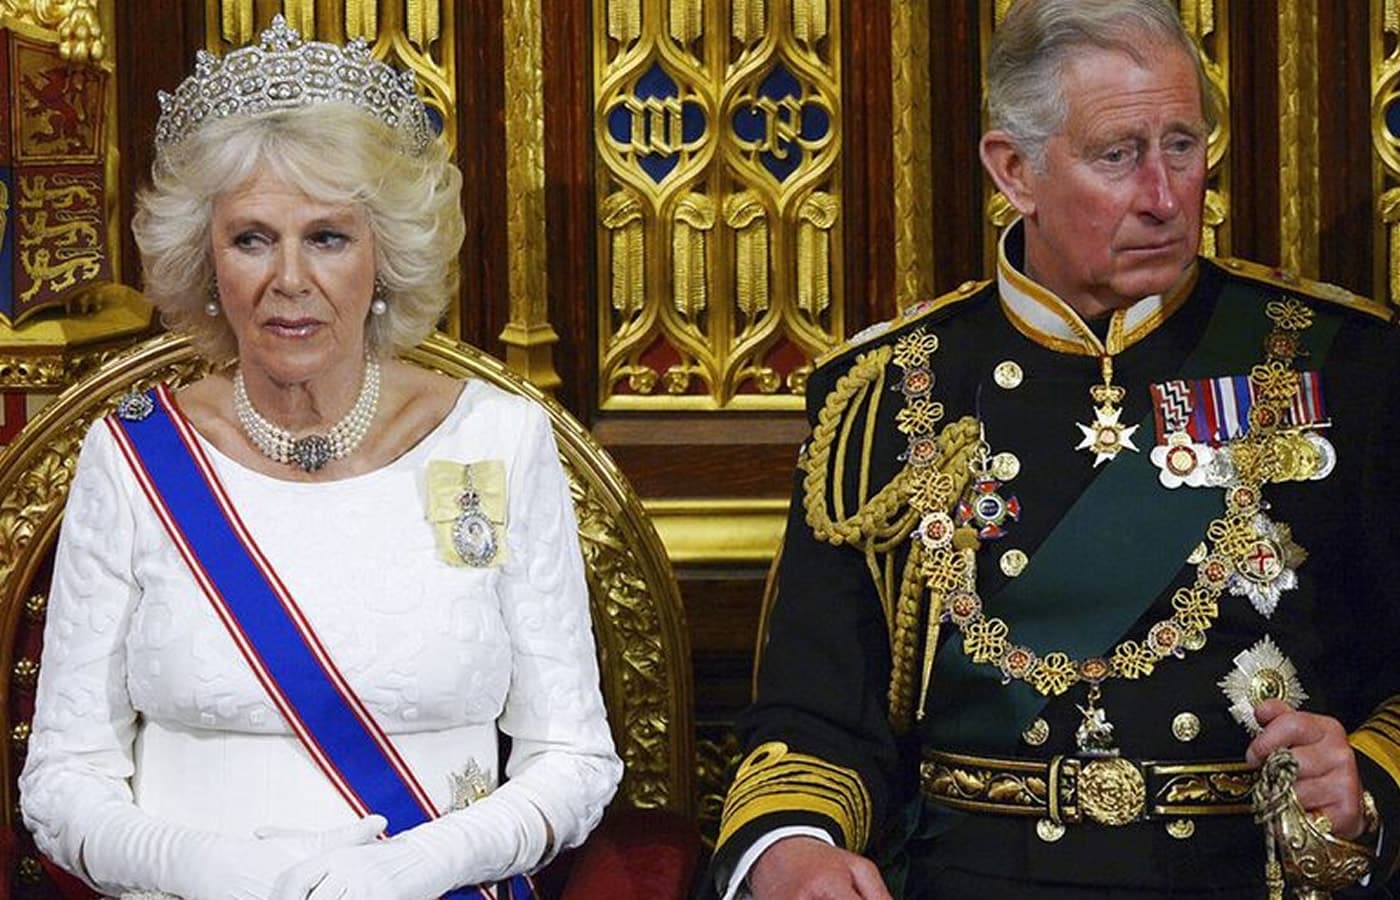 Την ώρα που ο εφιάλτης που ονομάζεται The Crown βγήκε σήμερα στην δημοσιότητα, ο Βασιλιάς της Αγγλίας Κάρολος ο Γ' είχε μια νέα περιπέτεια σε